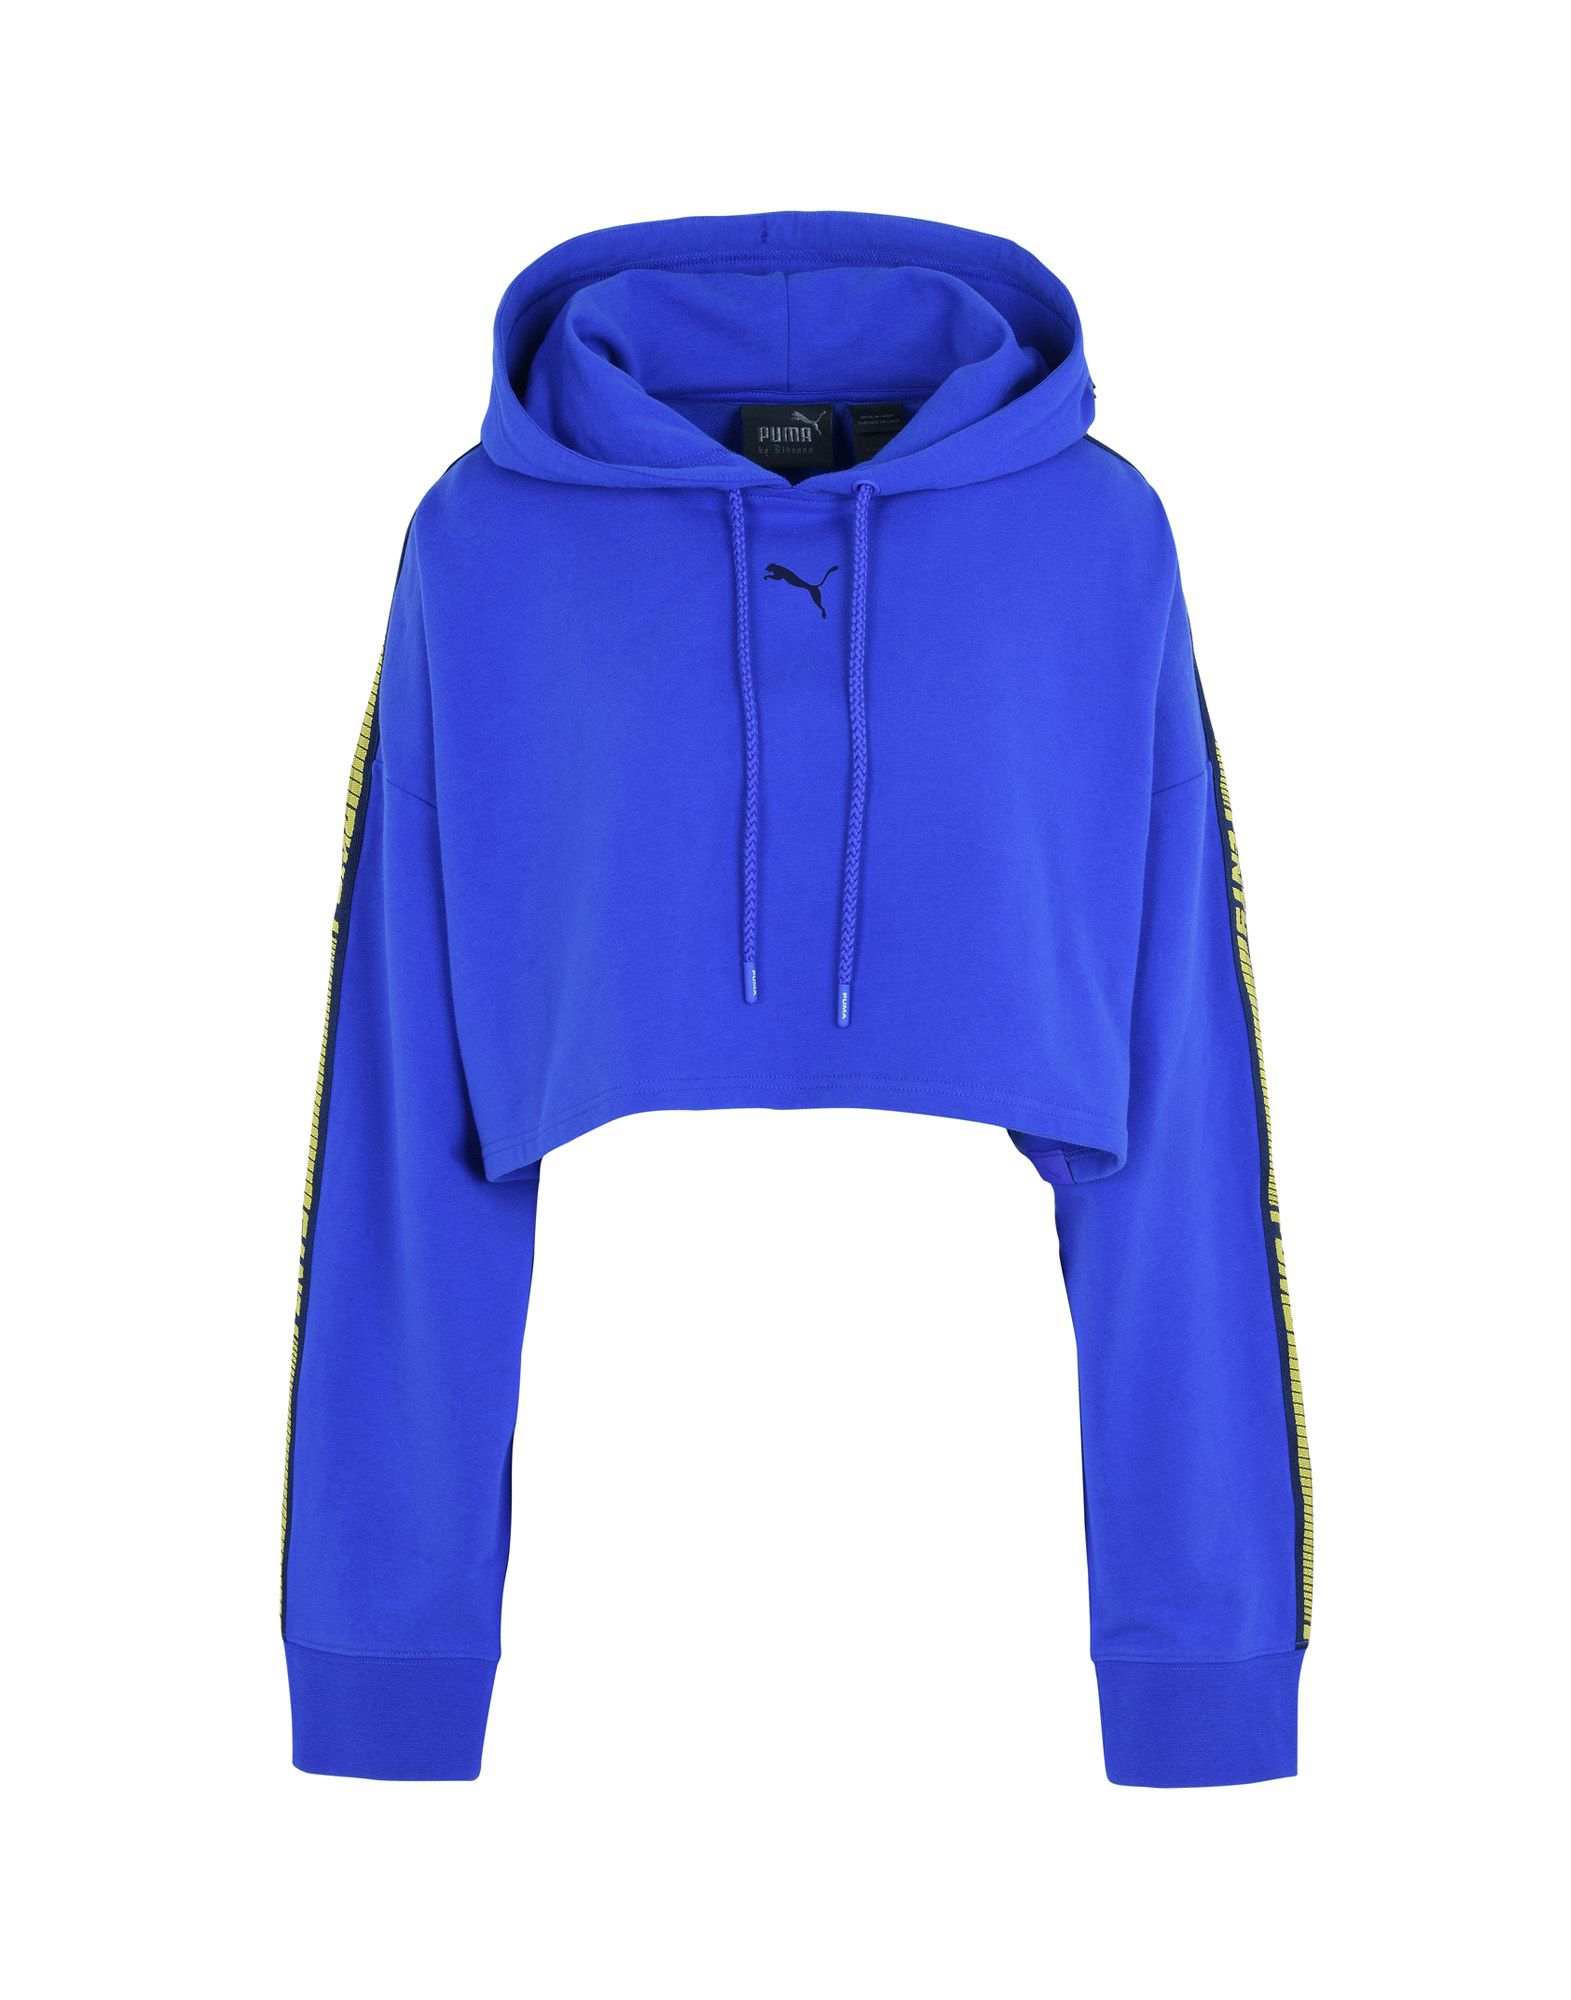 FENTY X PUMA Hooded sweatshirt,12172303GH 3